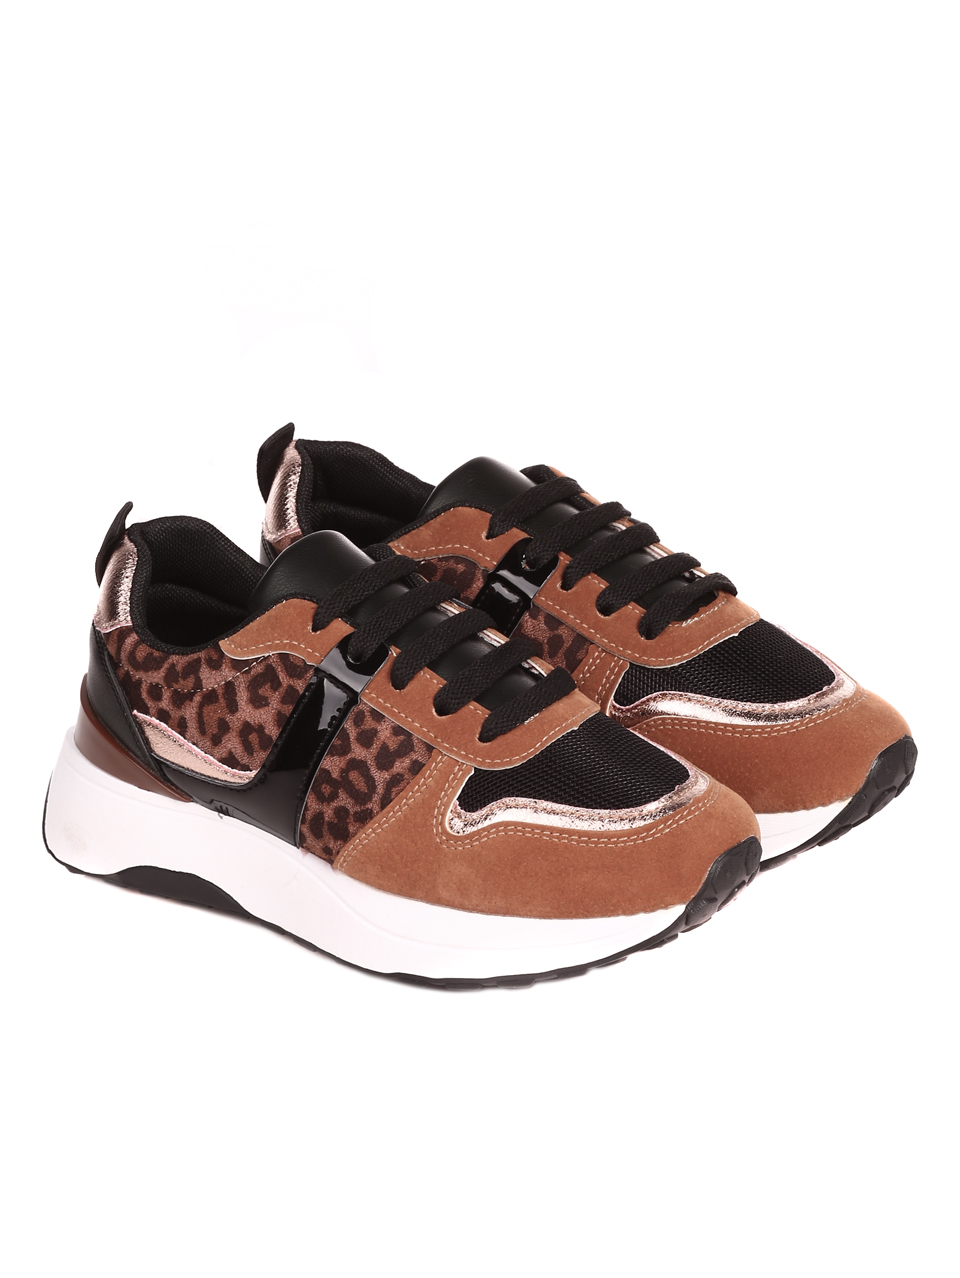 Ежедневни дамски обувки в кафяво 3U-22554 leopard